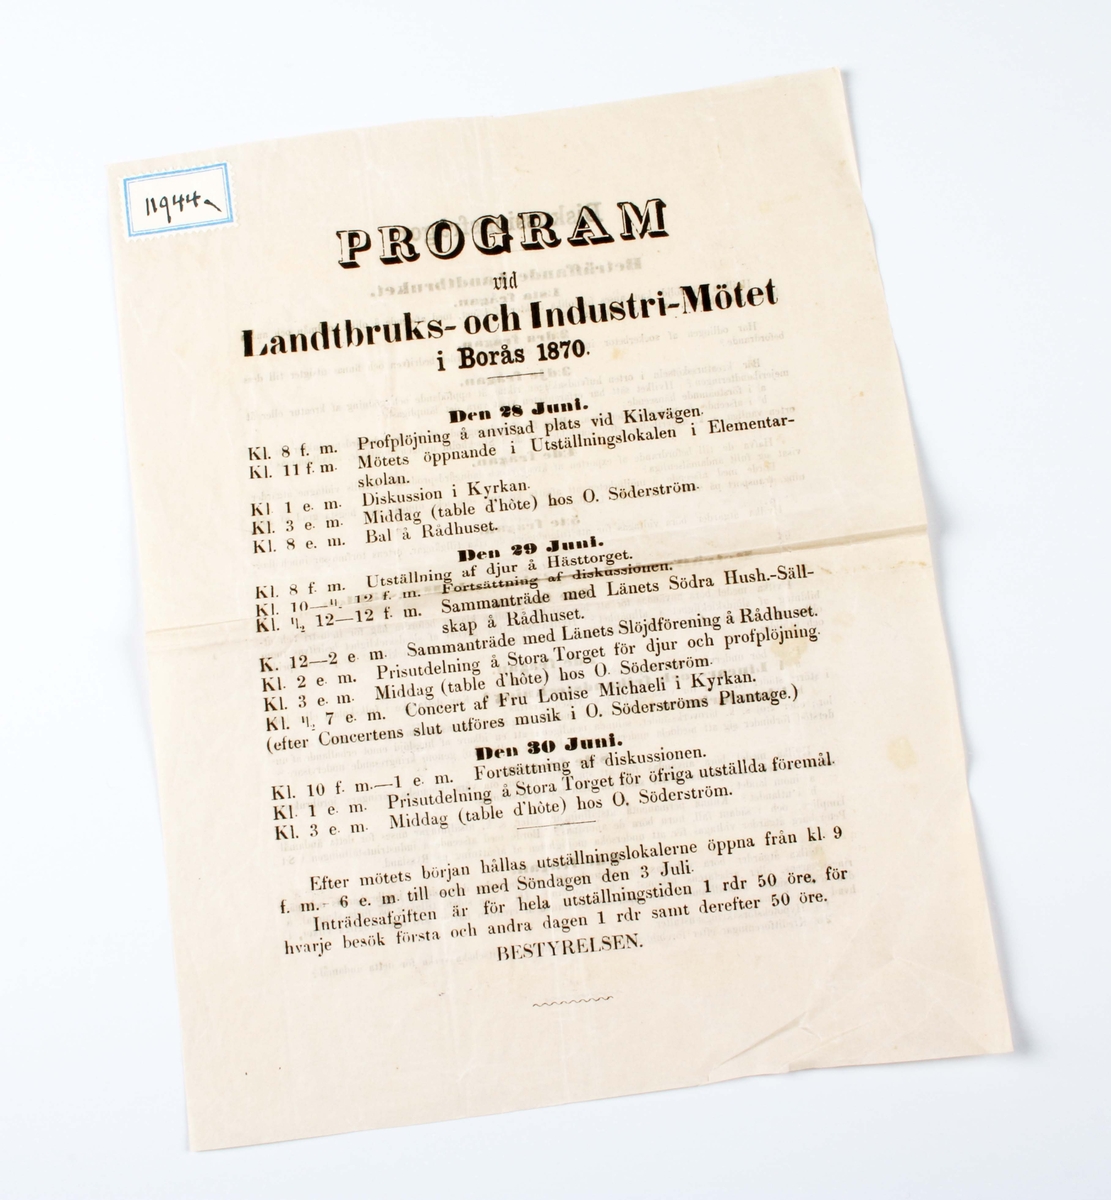 Programblad för "Landtbruks- och Industri-Mötet i Borås 1870". Bleknat papper med svart text. Vikt på mitten.